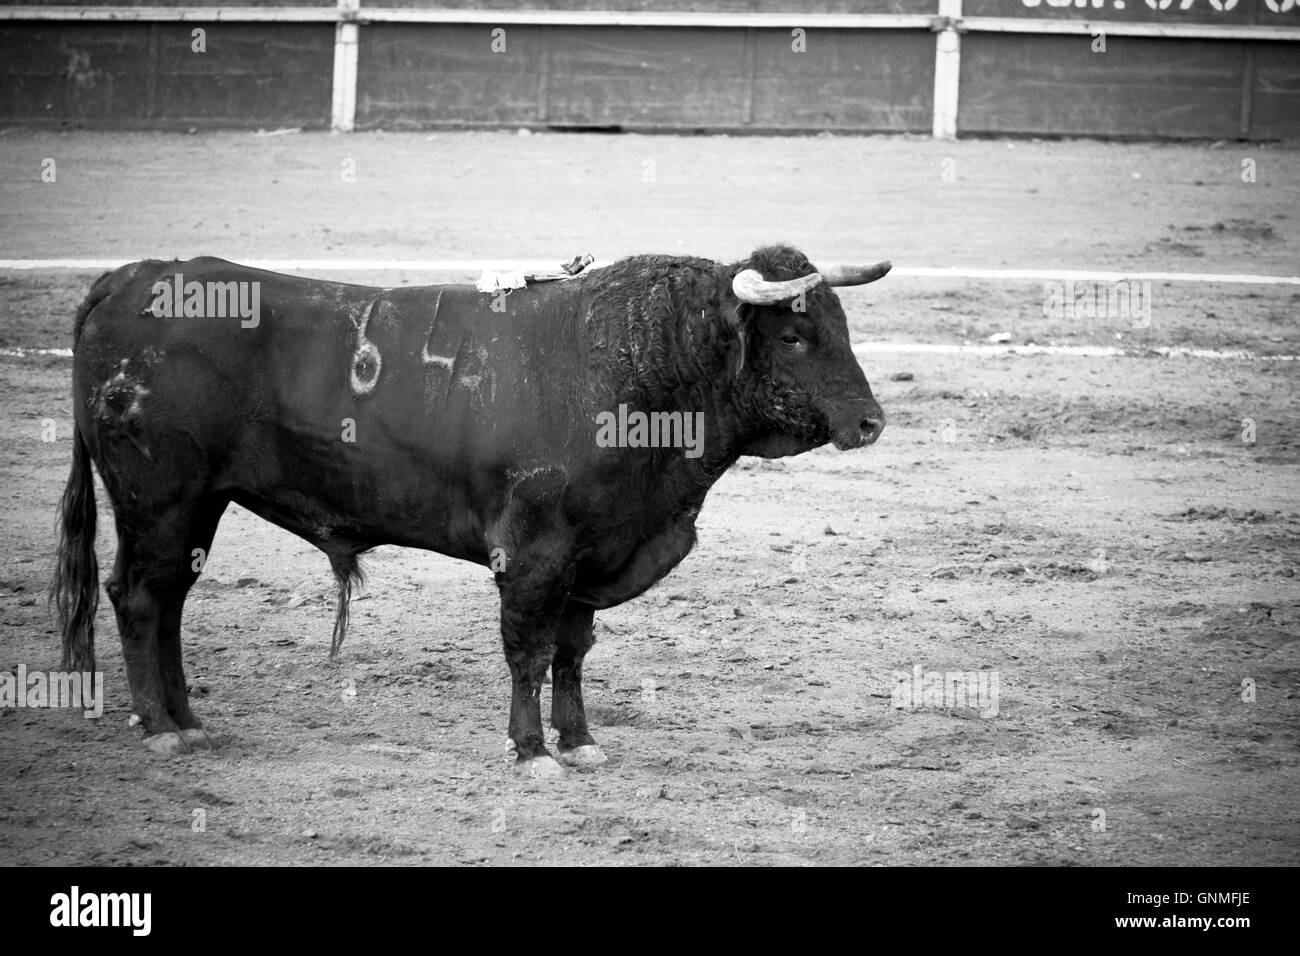 Spanish bull in bullring, Spanish bullfight Stock Photo